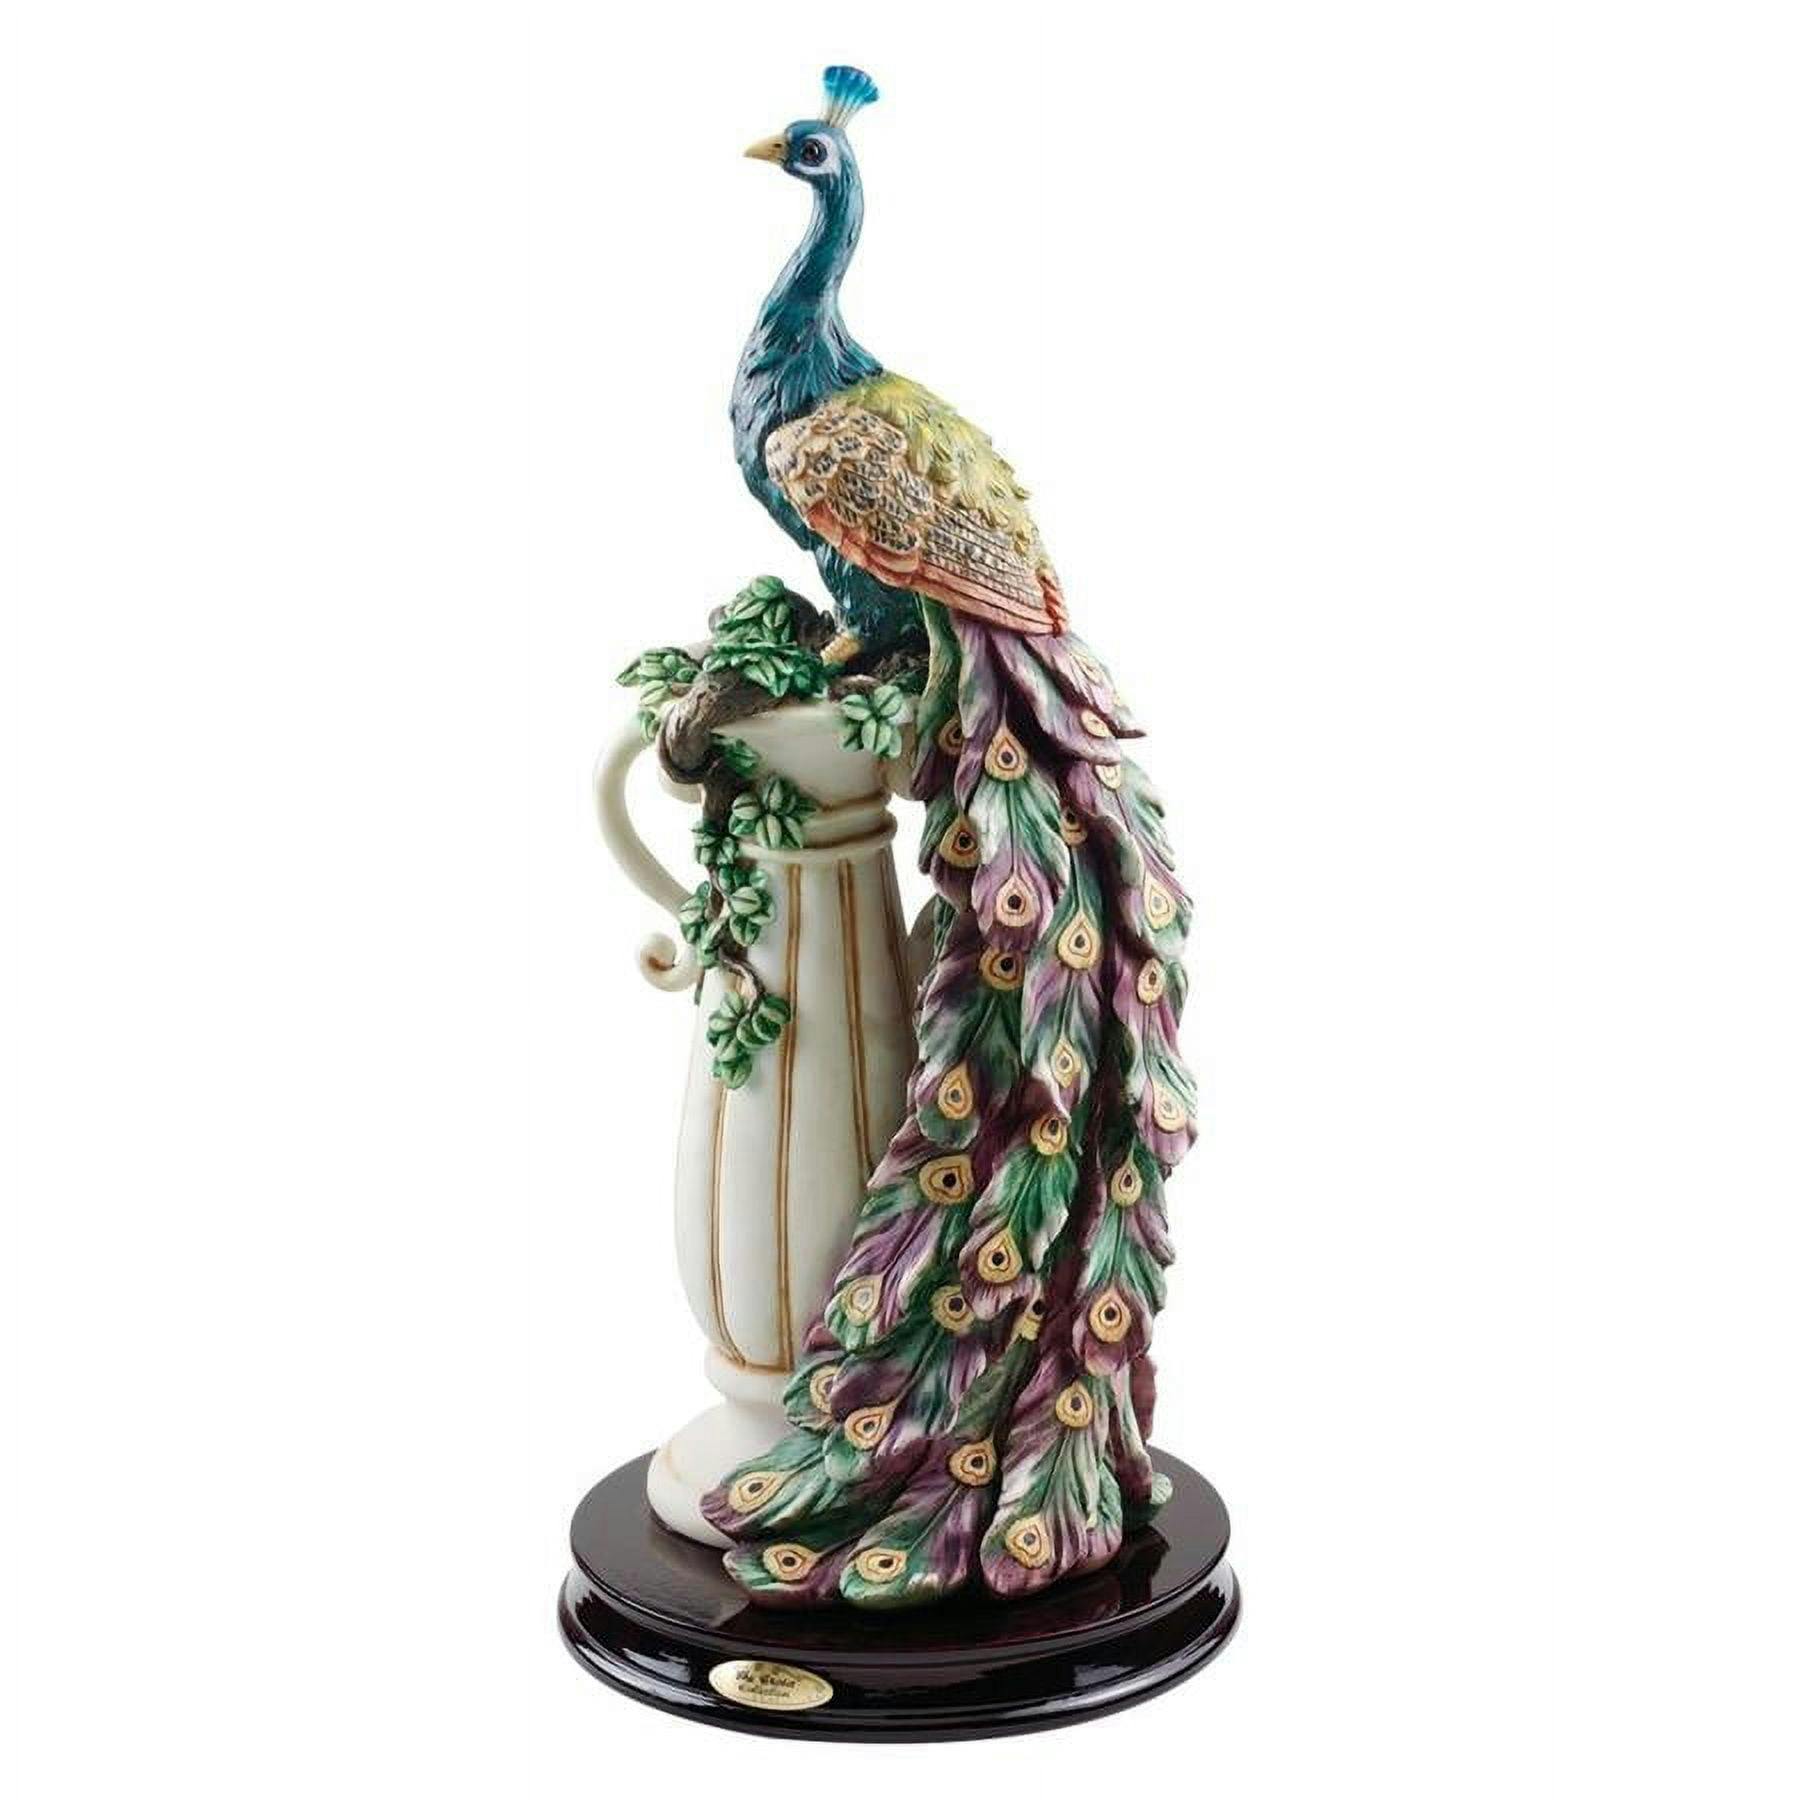 Regal Peacock 20" Iridescent Resin Statue for Home or Garden